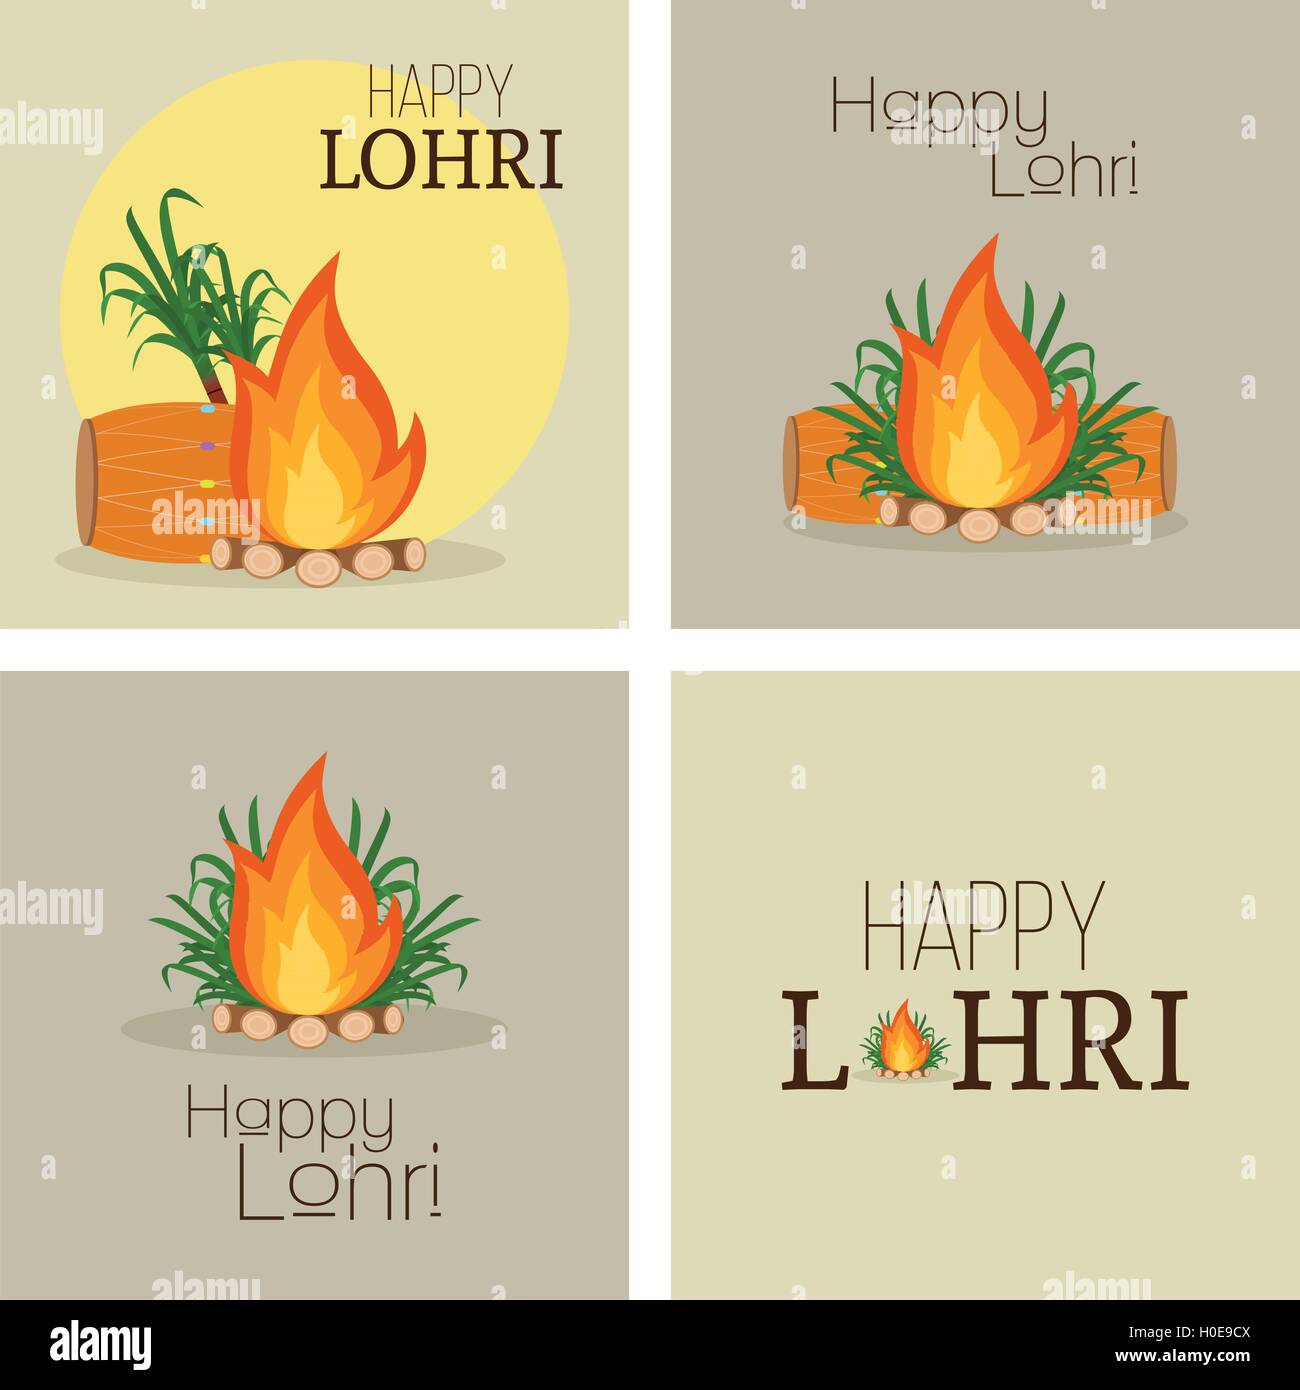 happy lohri background Stock Vector Image & Art - Alamy